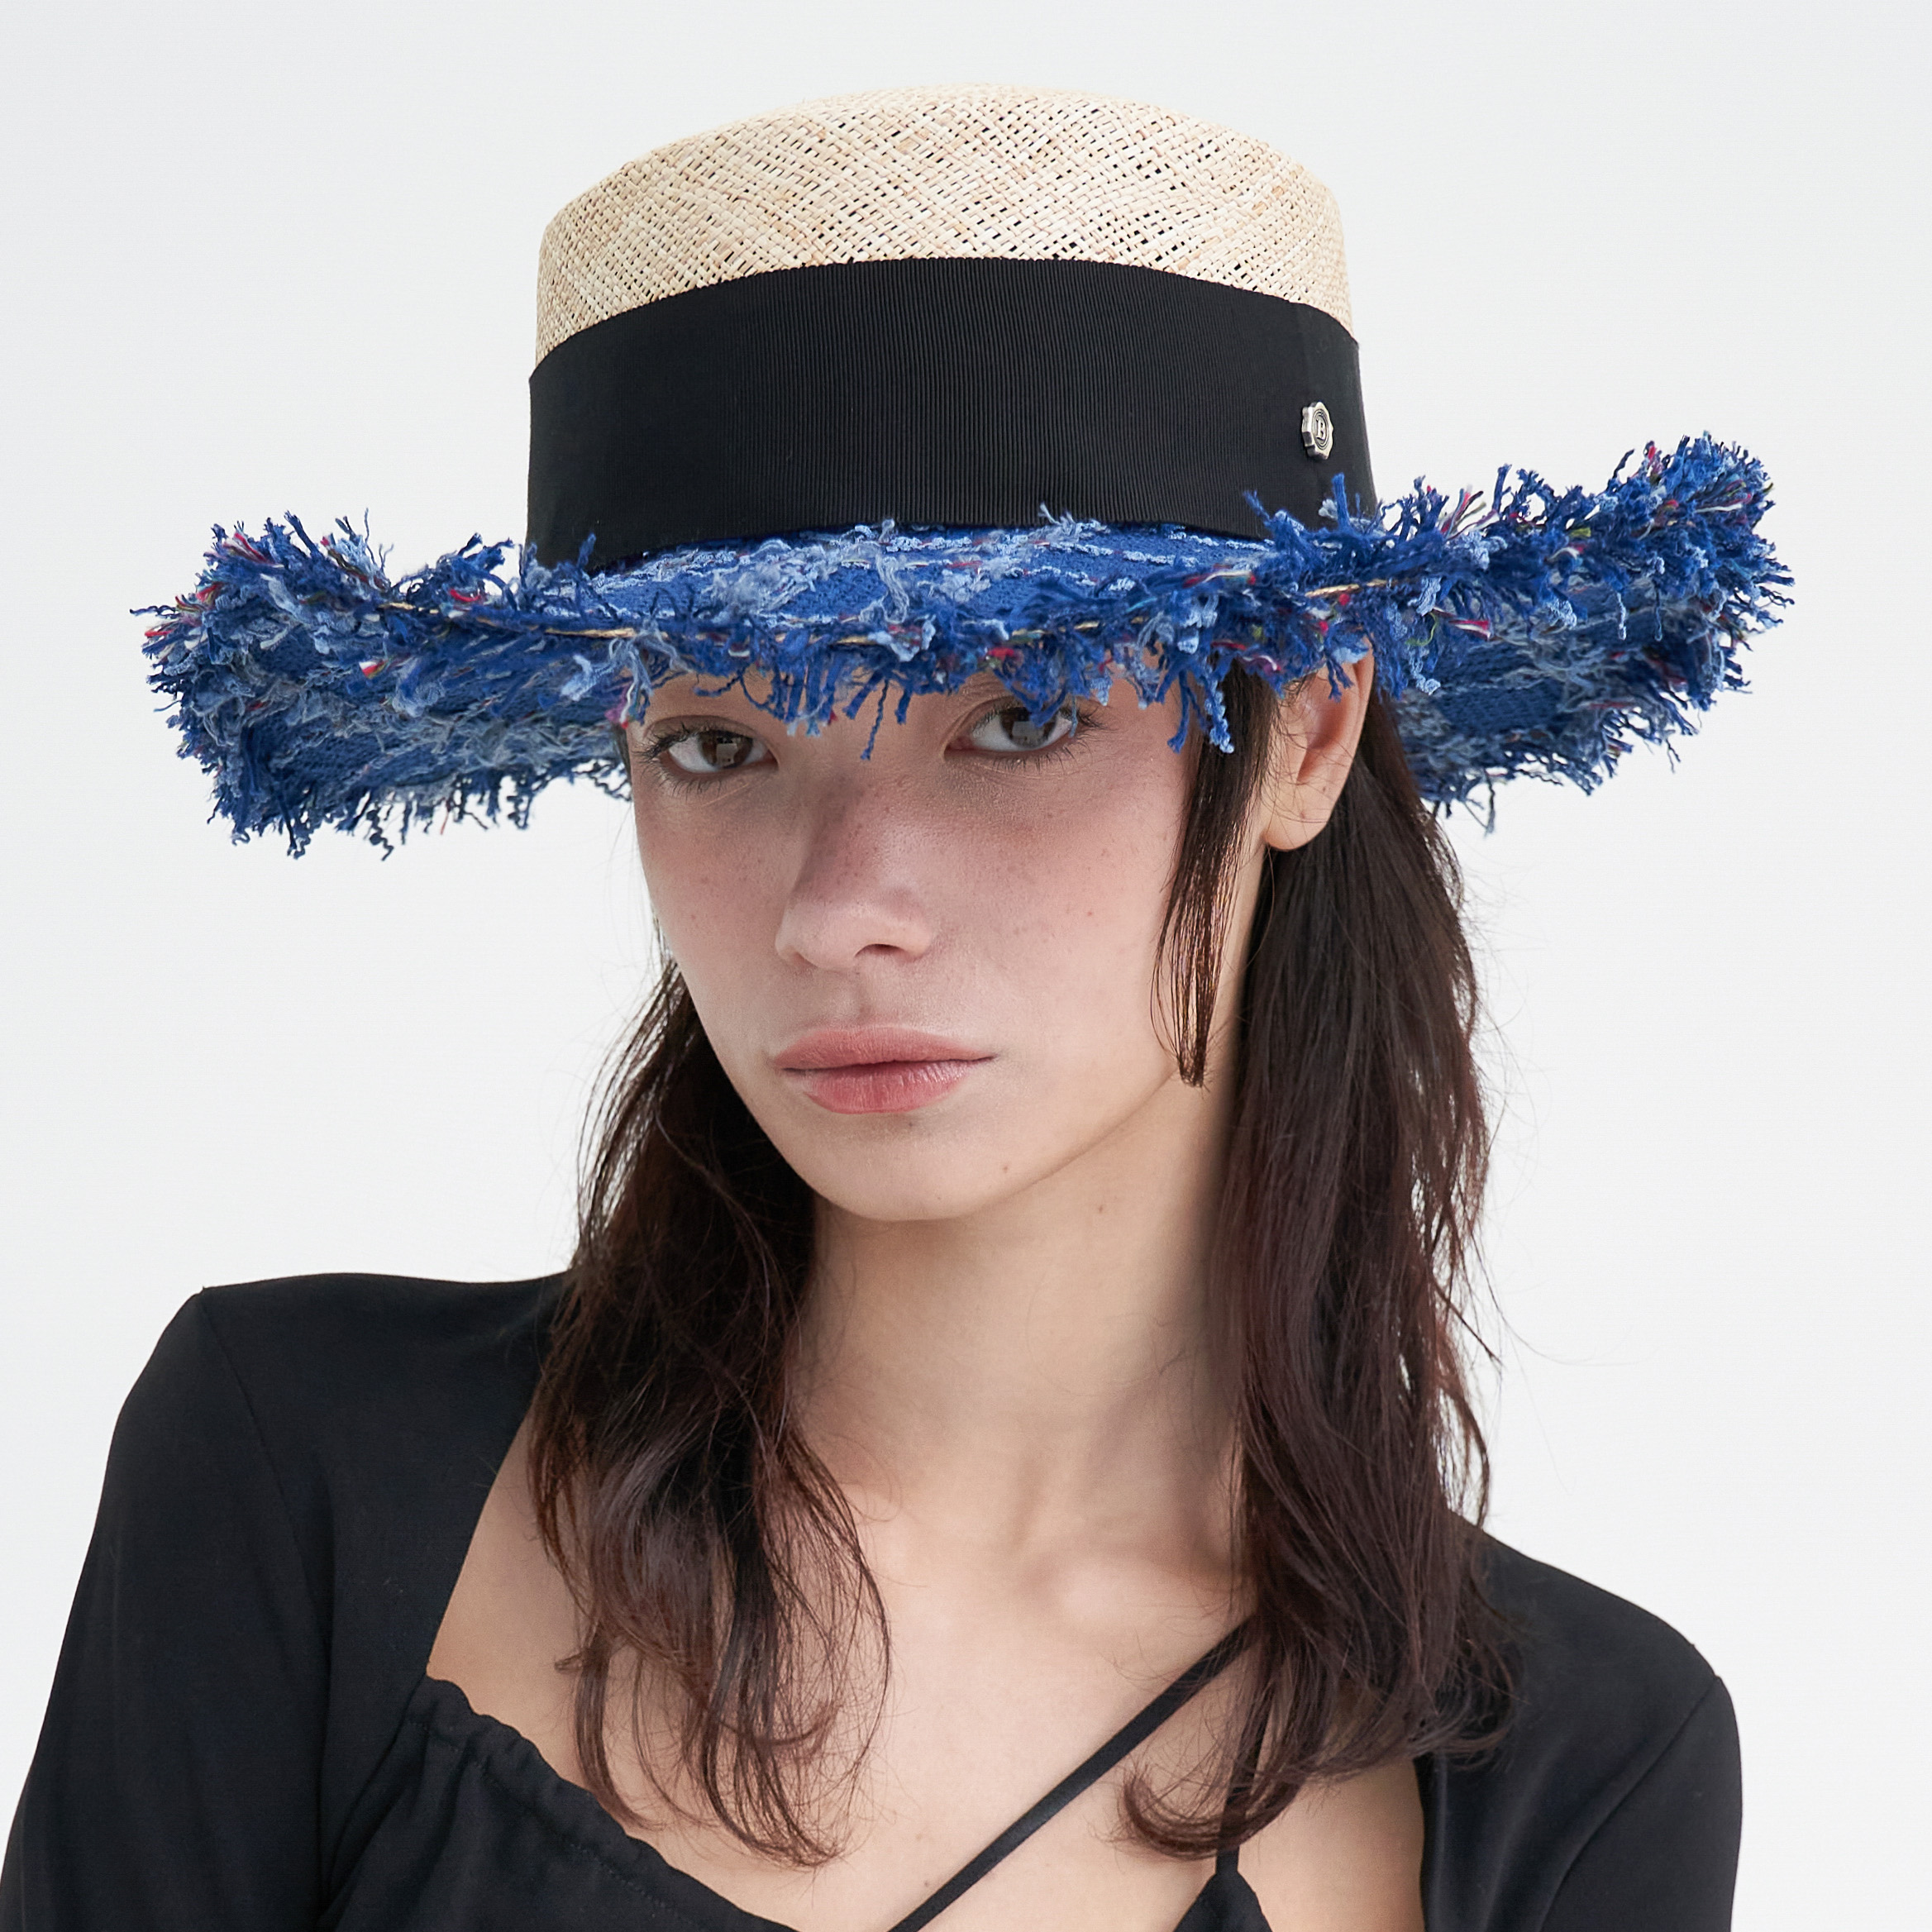 Wide Tweed Boater Hat - Royal Blue